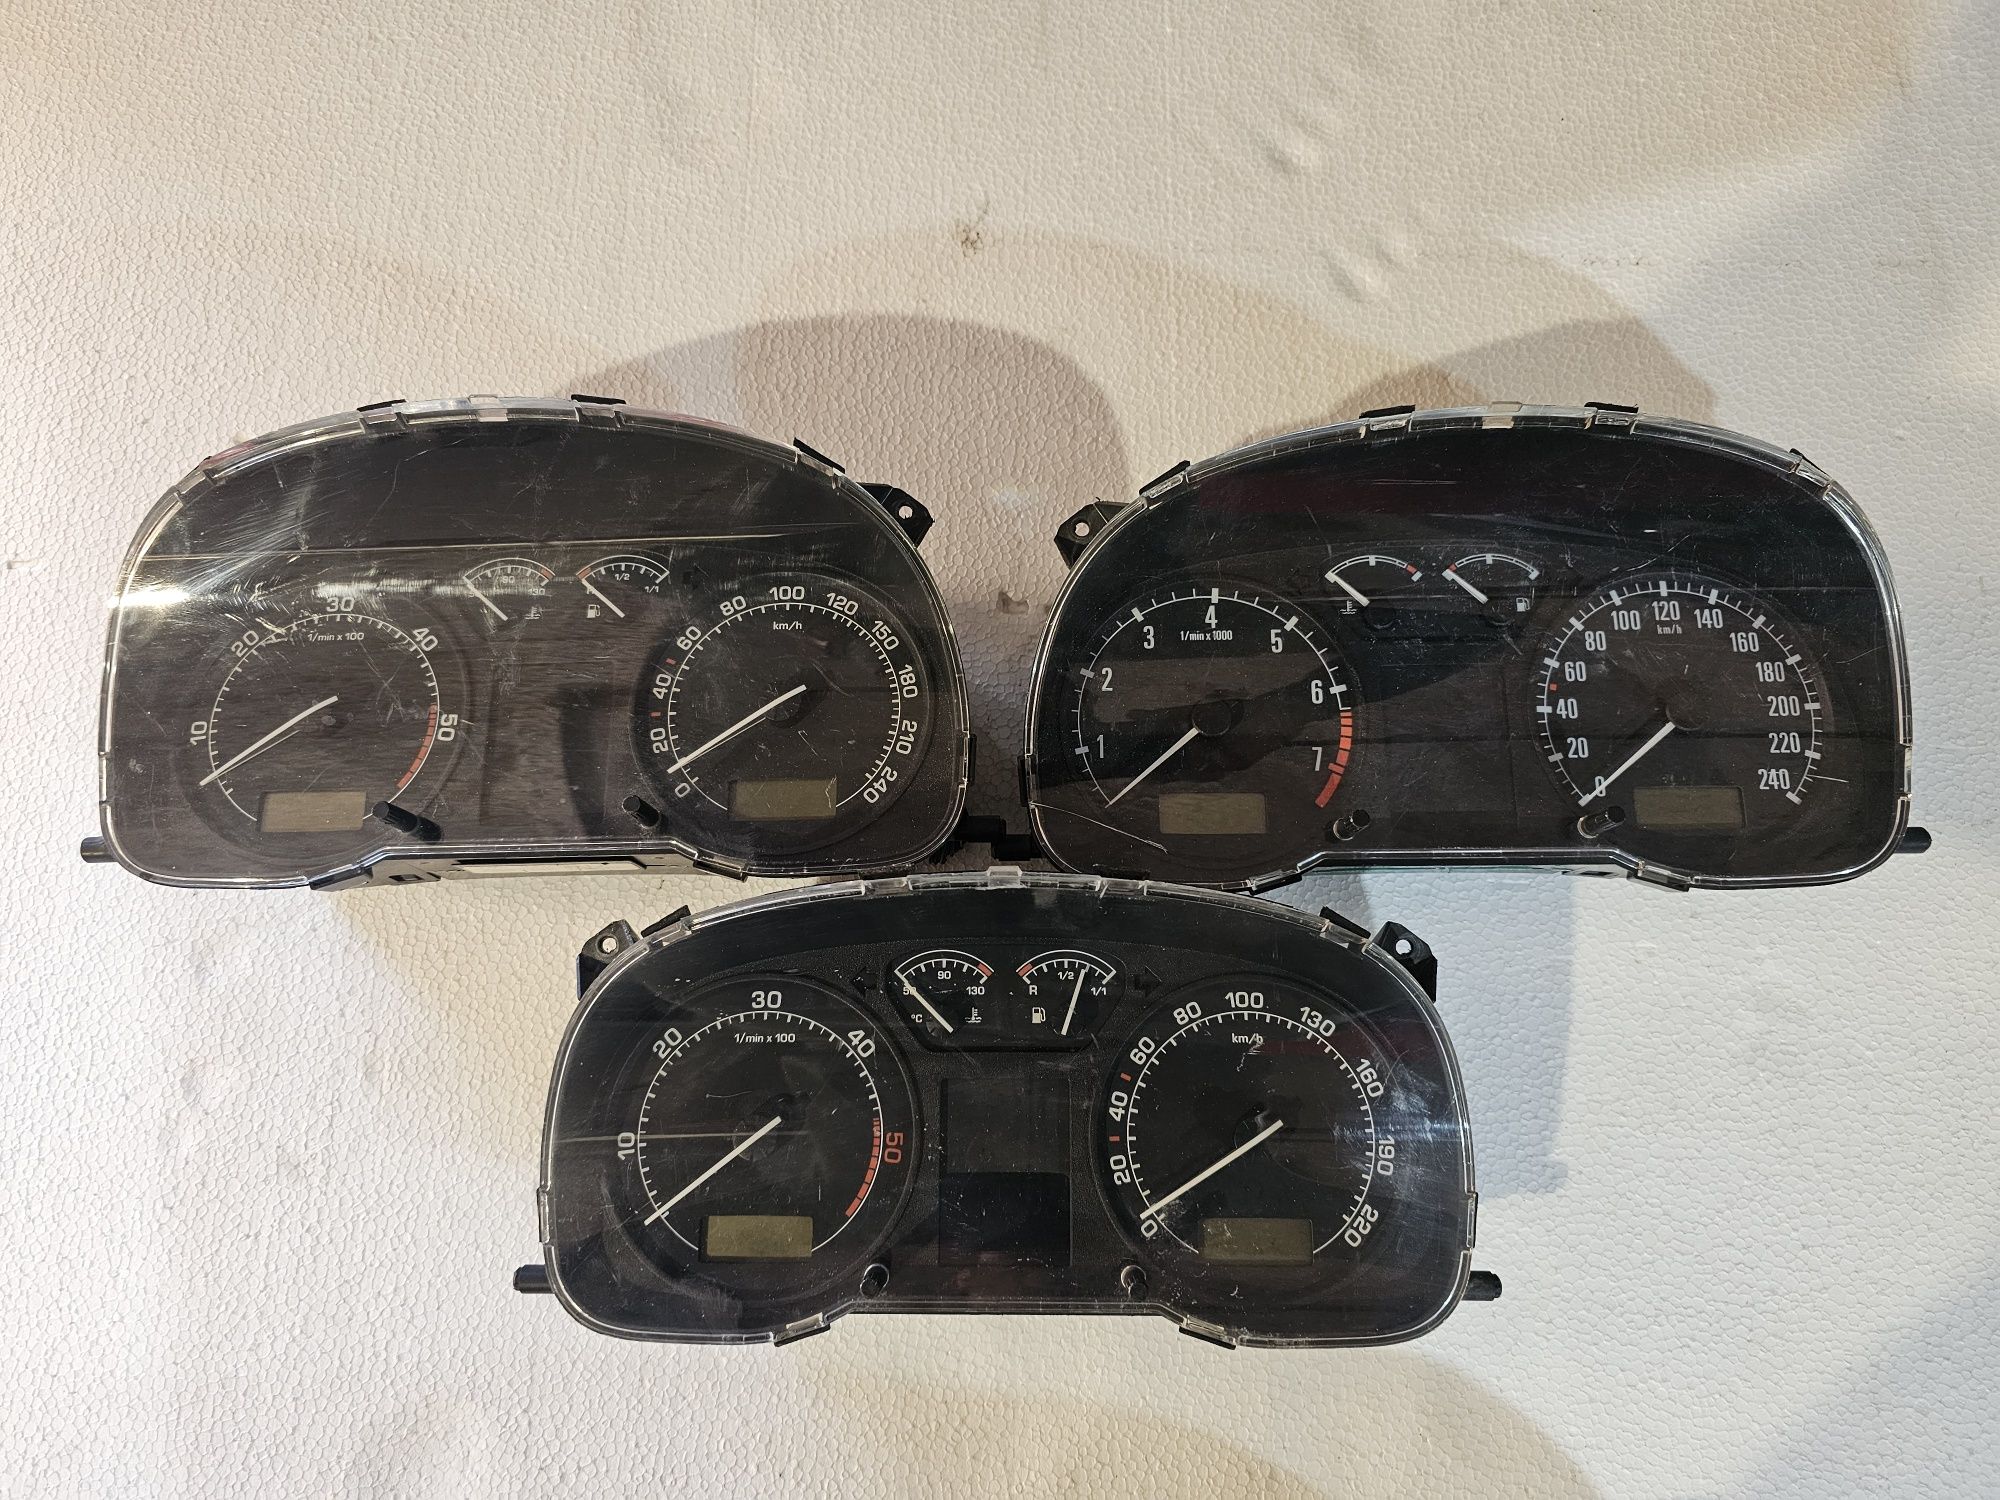 Ceasuri de bord originale Skoda Octavia 1

Nu le cunosc starea. 
Se va